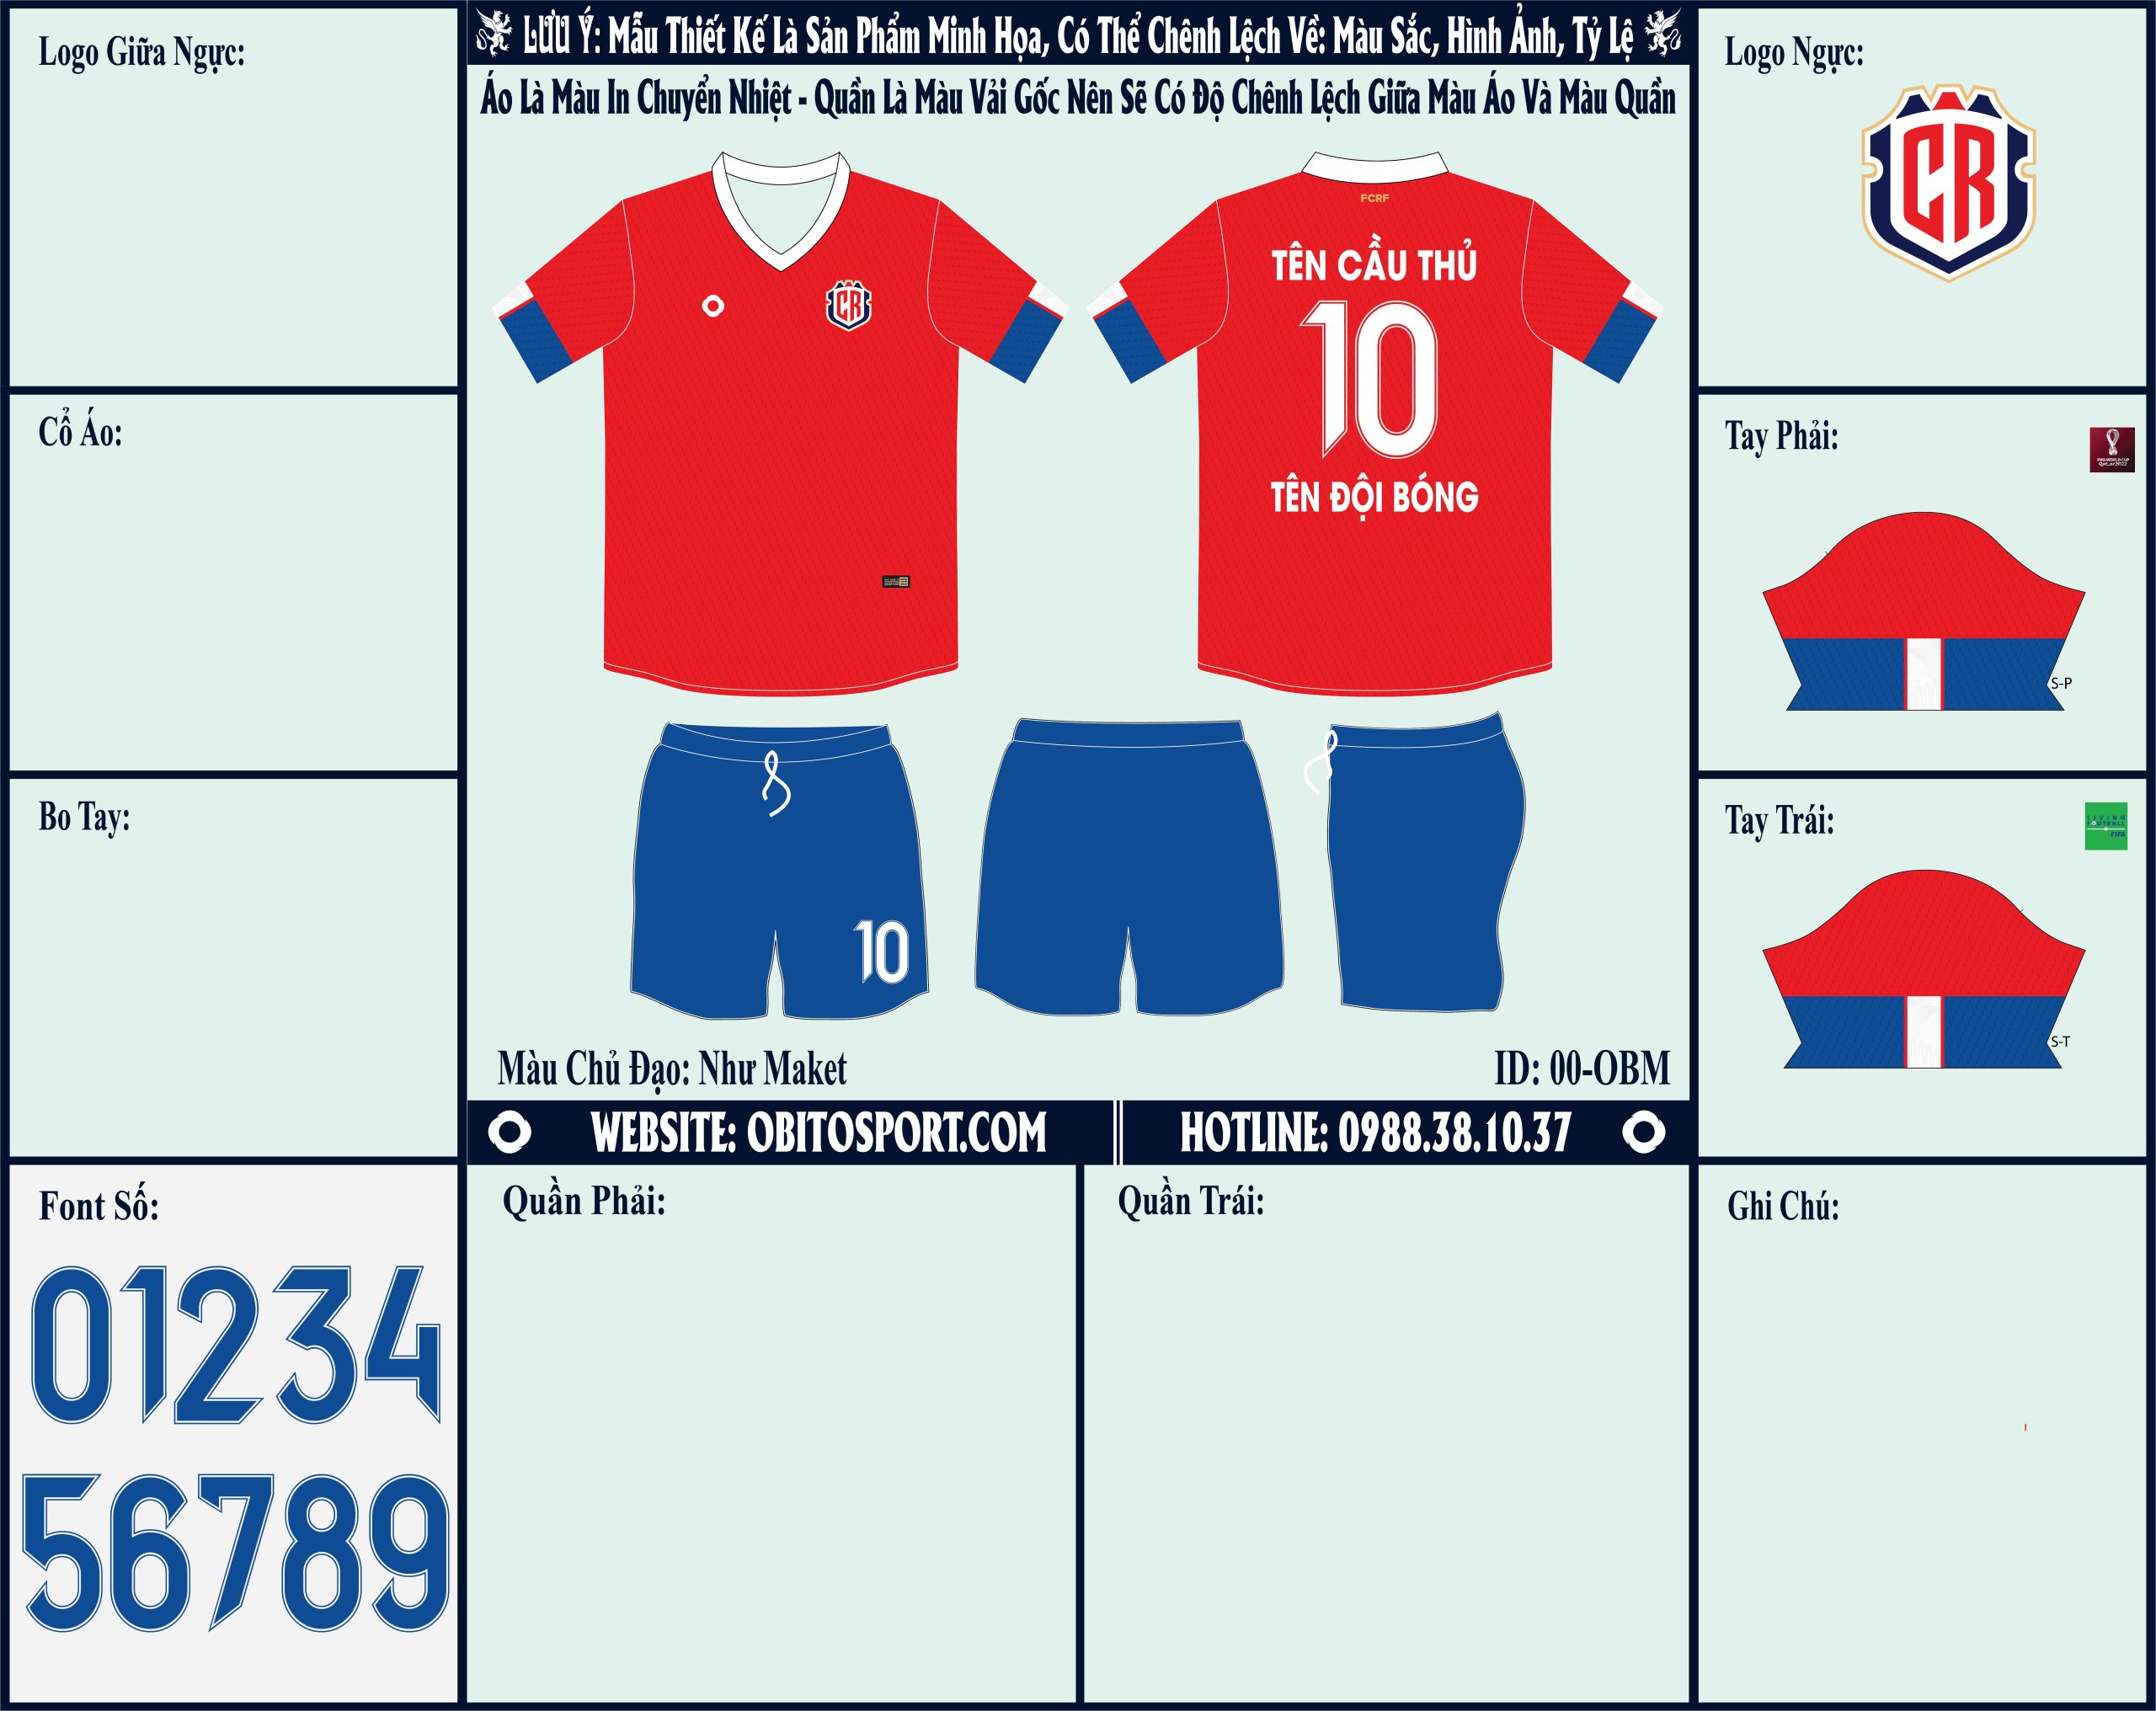 Thật đáng tiếc nếu như bạn bỏ qua Mẫu ảnh áo đội tuyển Costa Rica sân nhà World Cup 2022 Market tại Shop Obito Sport chúng tôi. Thiết kế đẹp, form dáng chuẩn, giá cả hợp lý. Hơn nữa, mẫu áo được lấy gam màu độc lạ làm gam màu chủ đạo. Và phối cùng chiếc quần short cùng gam màu xanh của bầu trời, một gam màu hấp dẫn. 